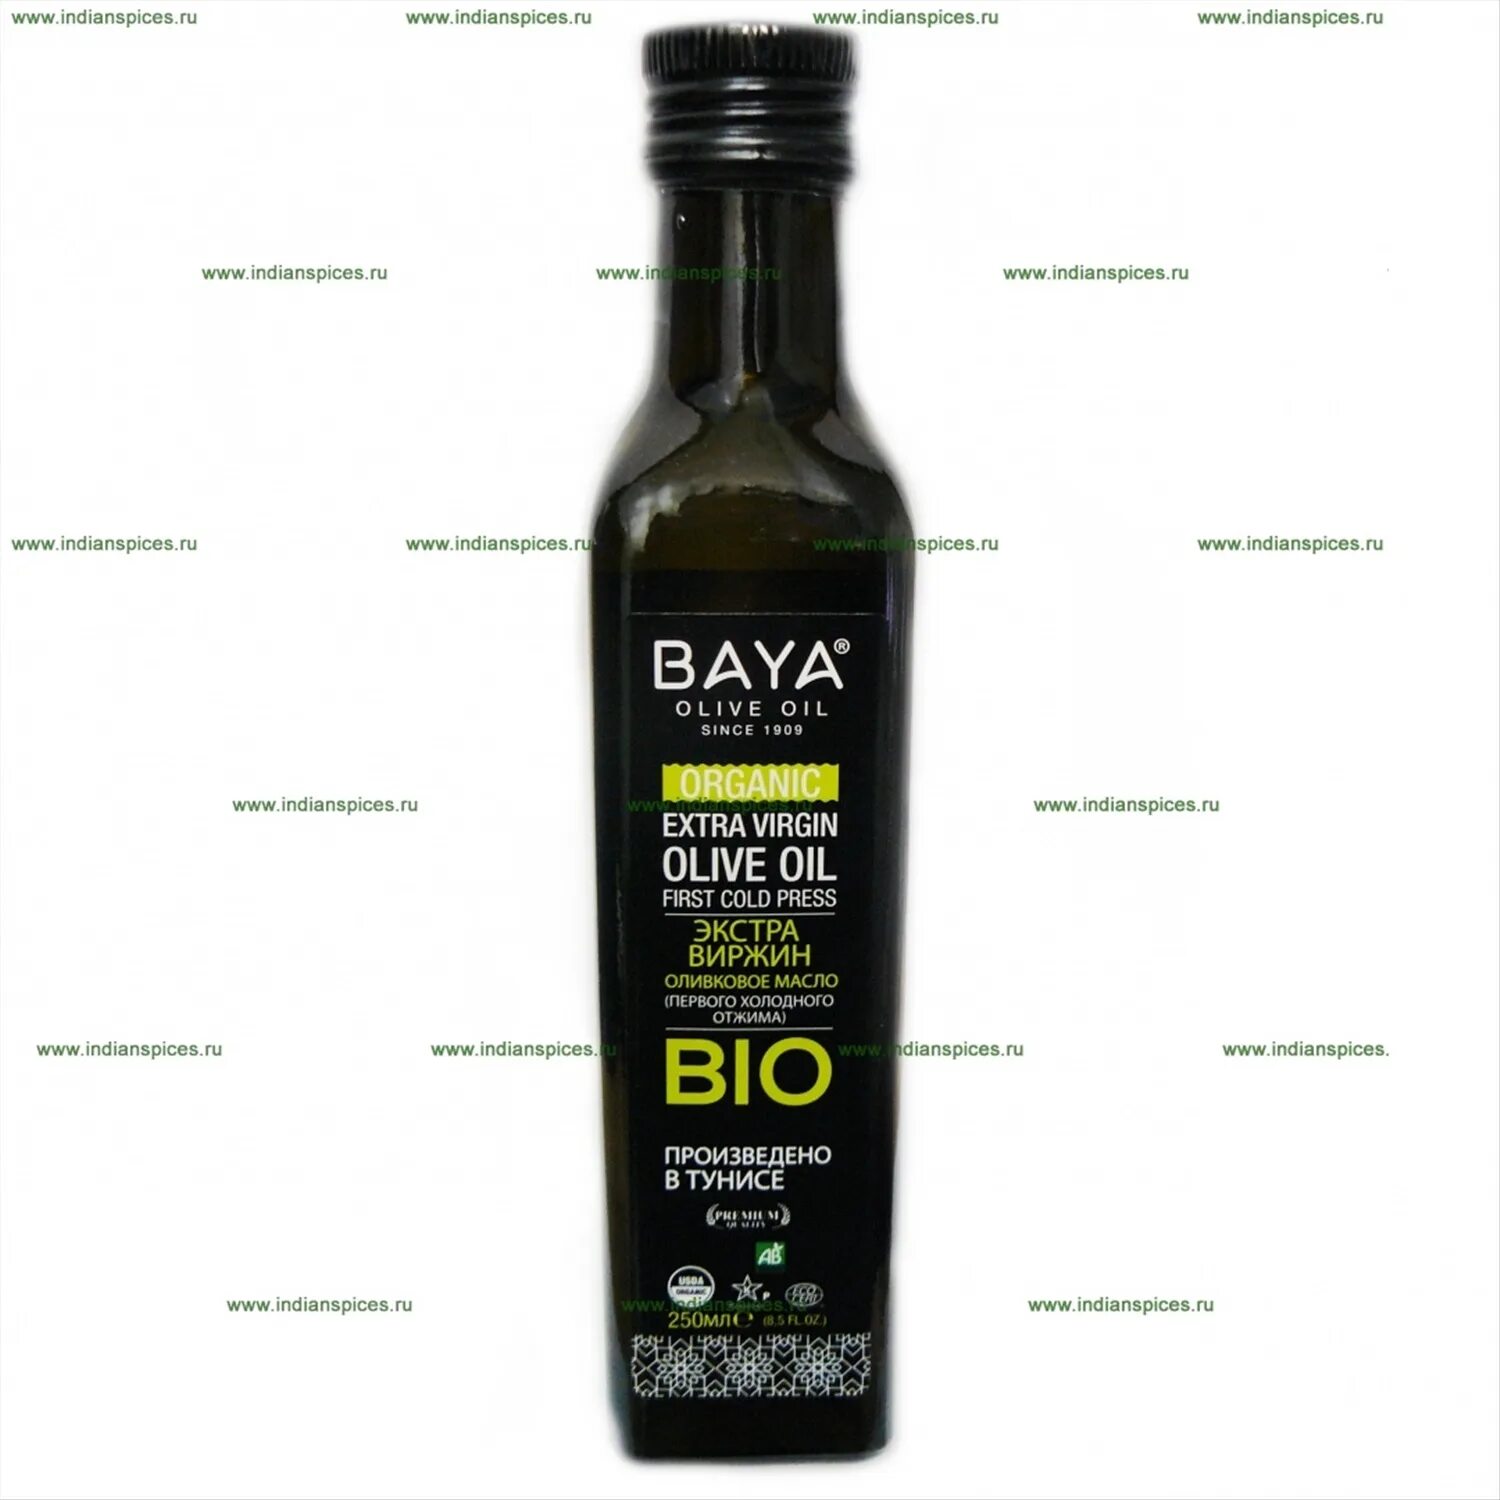 Оливковое масло baya. Baya масло оливковое. Olitalia масло оливковое. Оливковое масло био. Масло оливковое Bio.